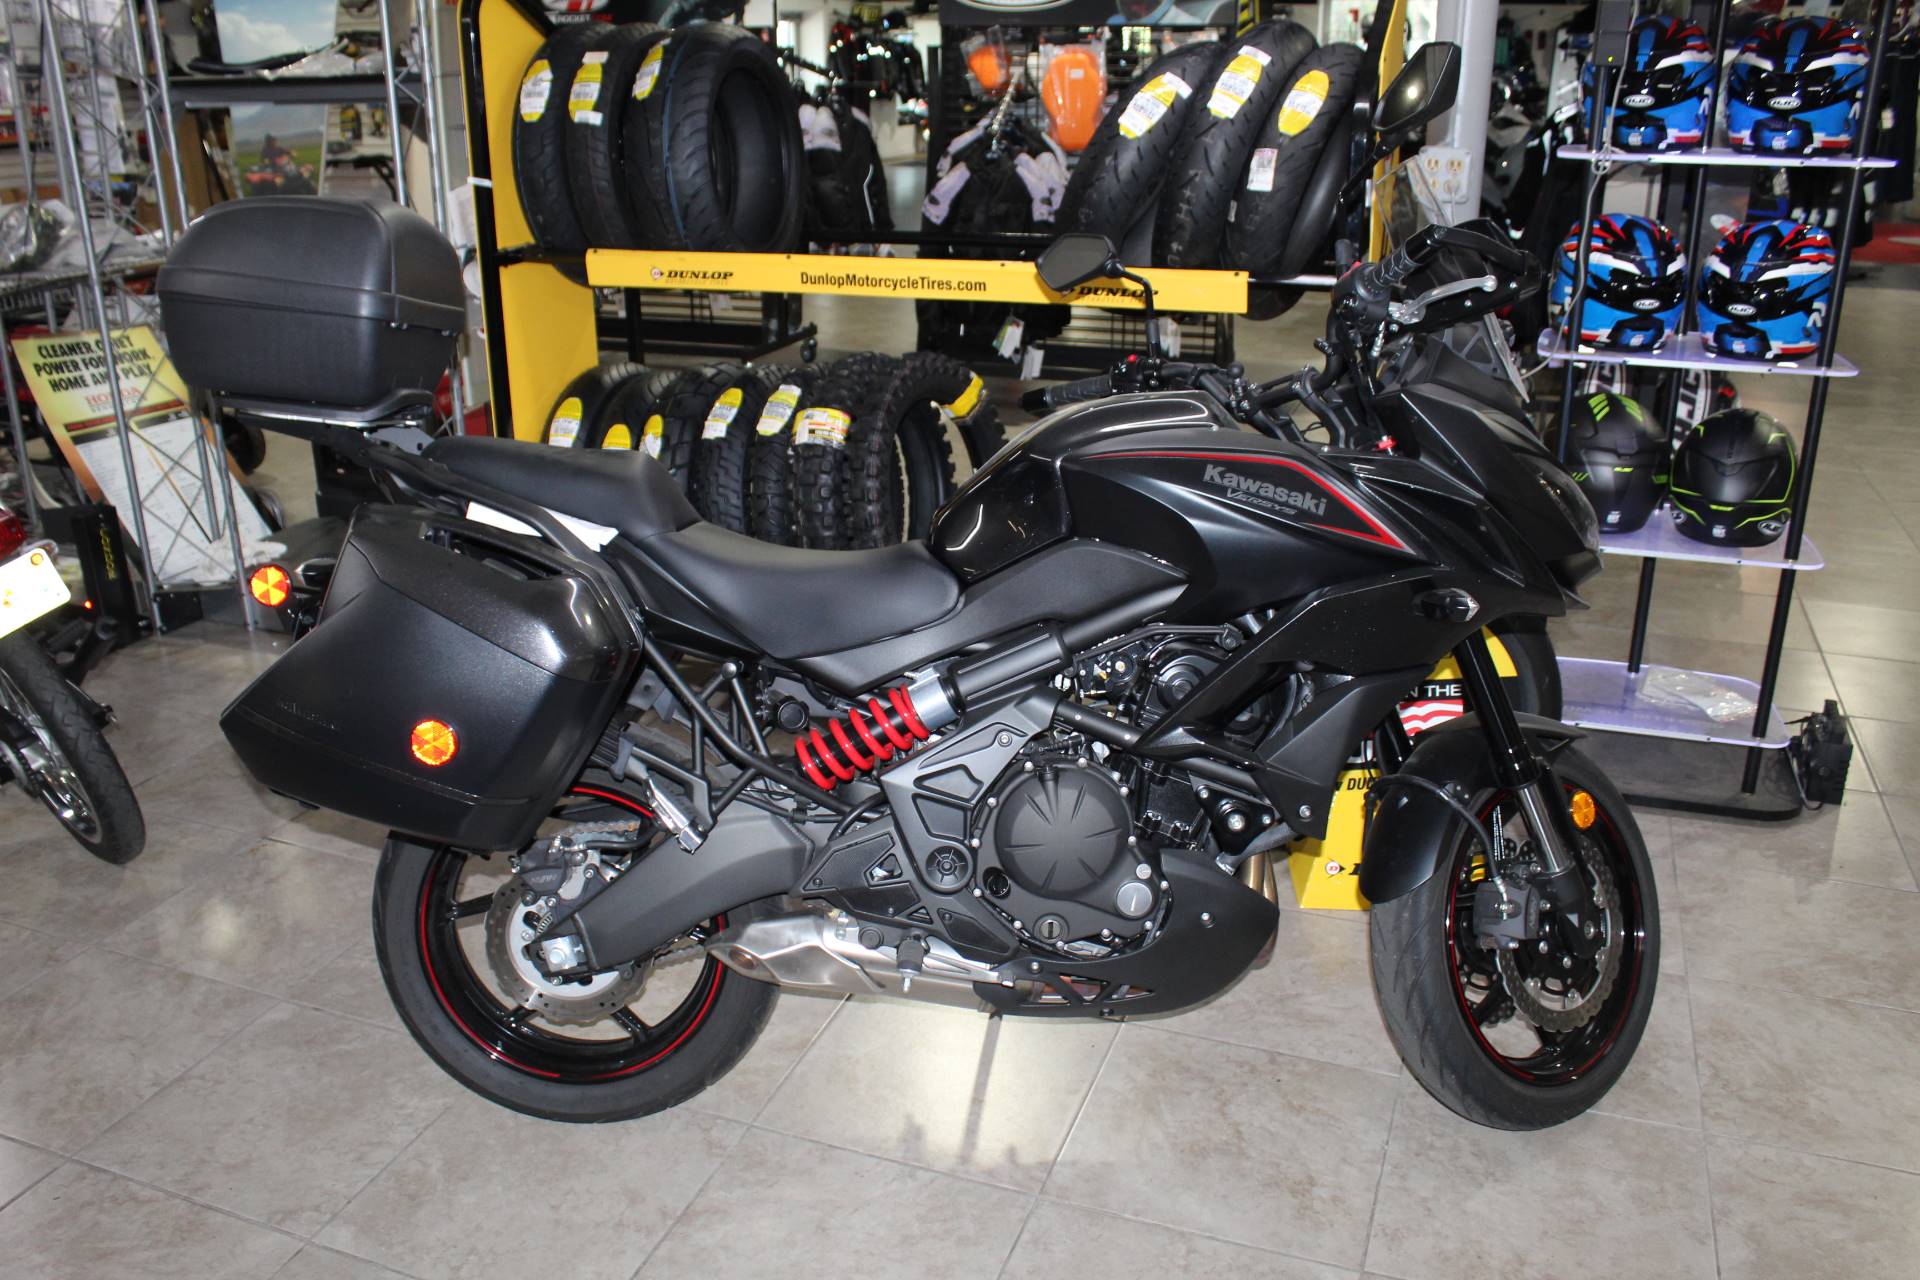 Used 2018 Kawasaki Versys 650 Lt Motorcycles In Sarasota Fl Ukm234 Metallic Flat Spark Black Metallic Carbon Gray